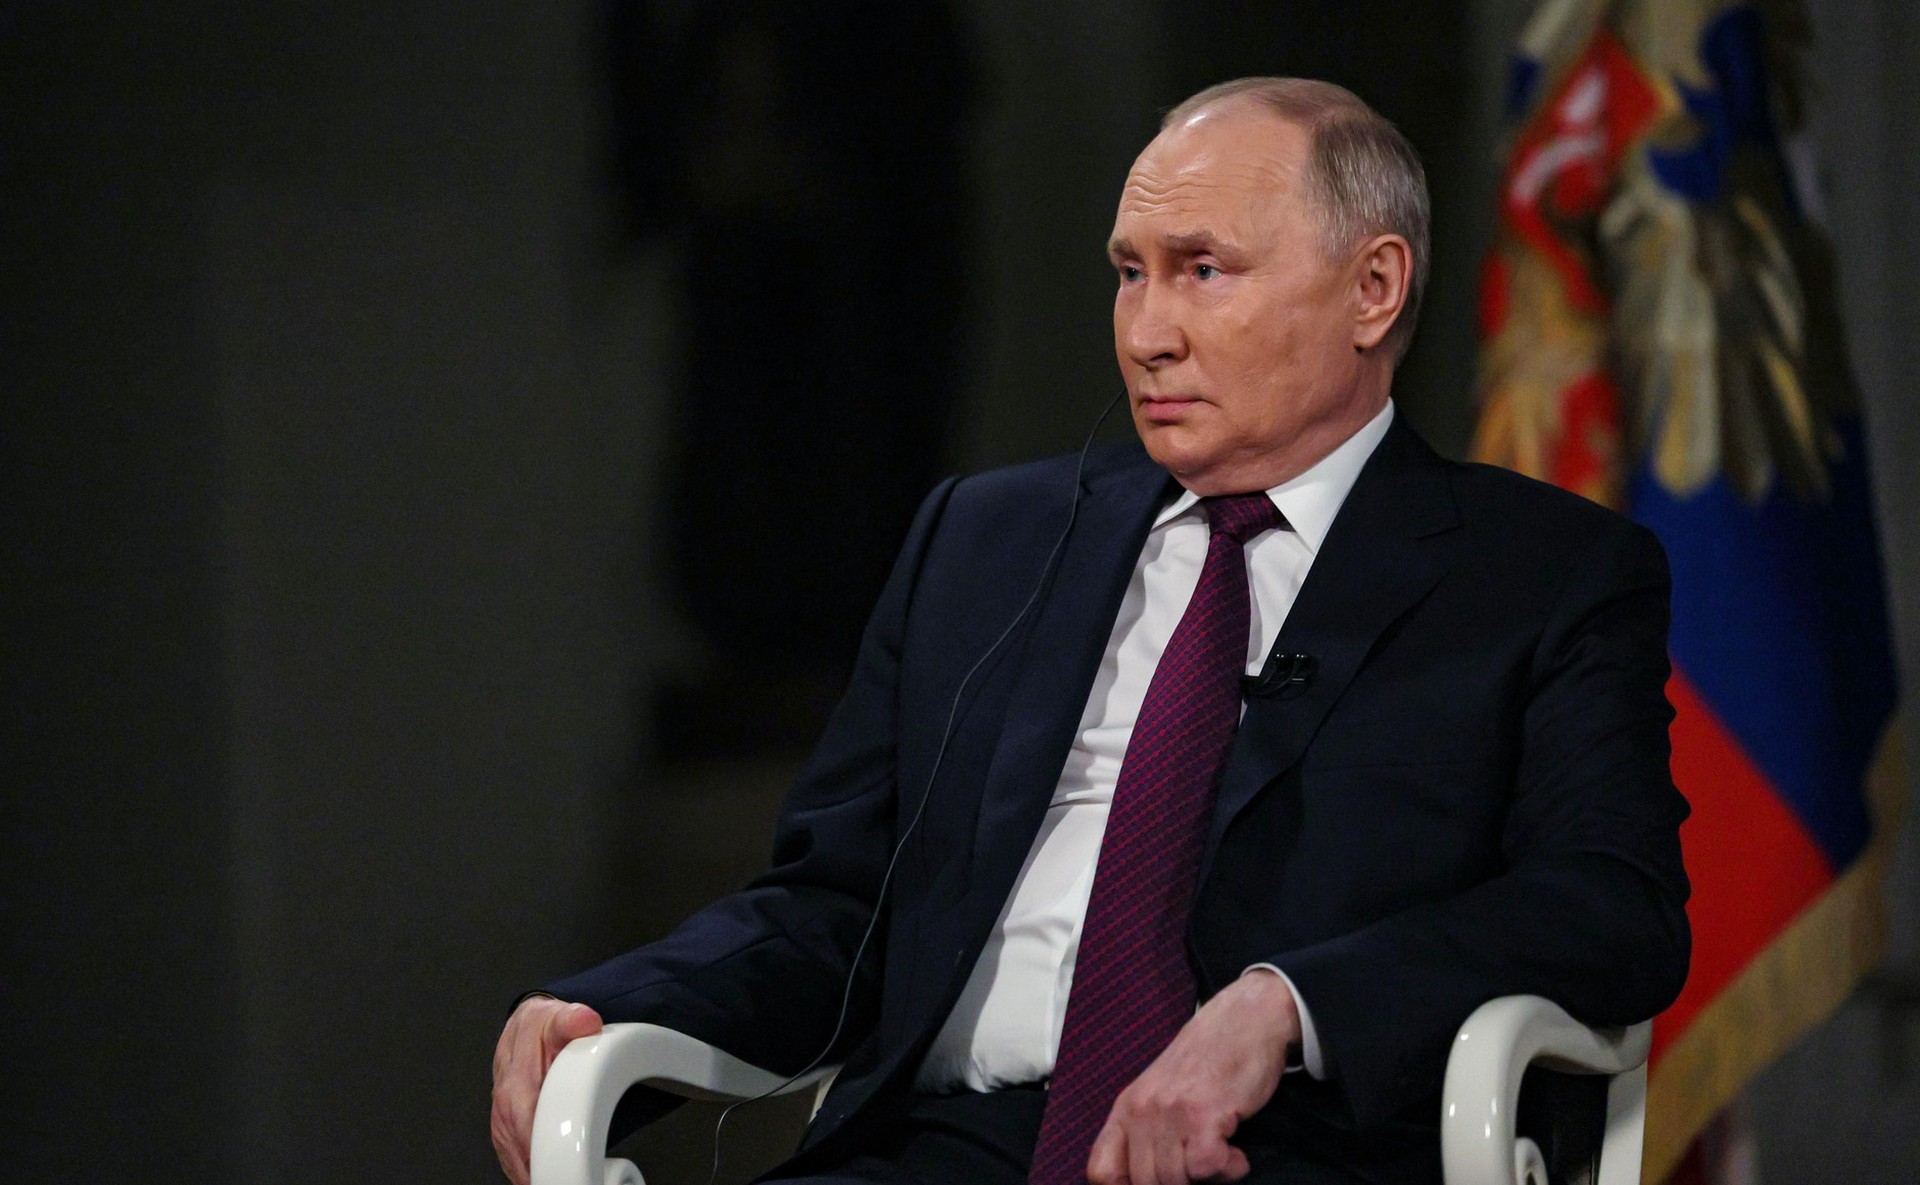 AC: Интервью Путина показало угрозу американцам из-за незнания истории России